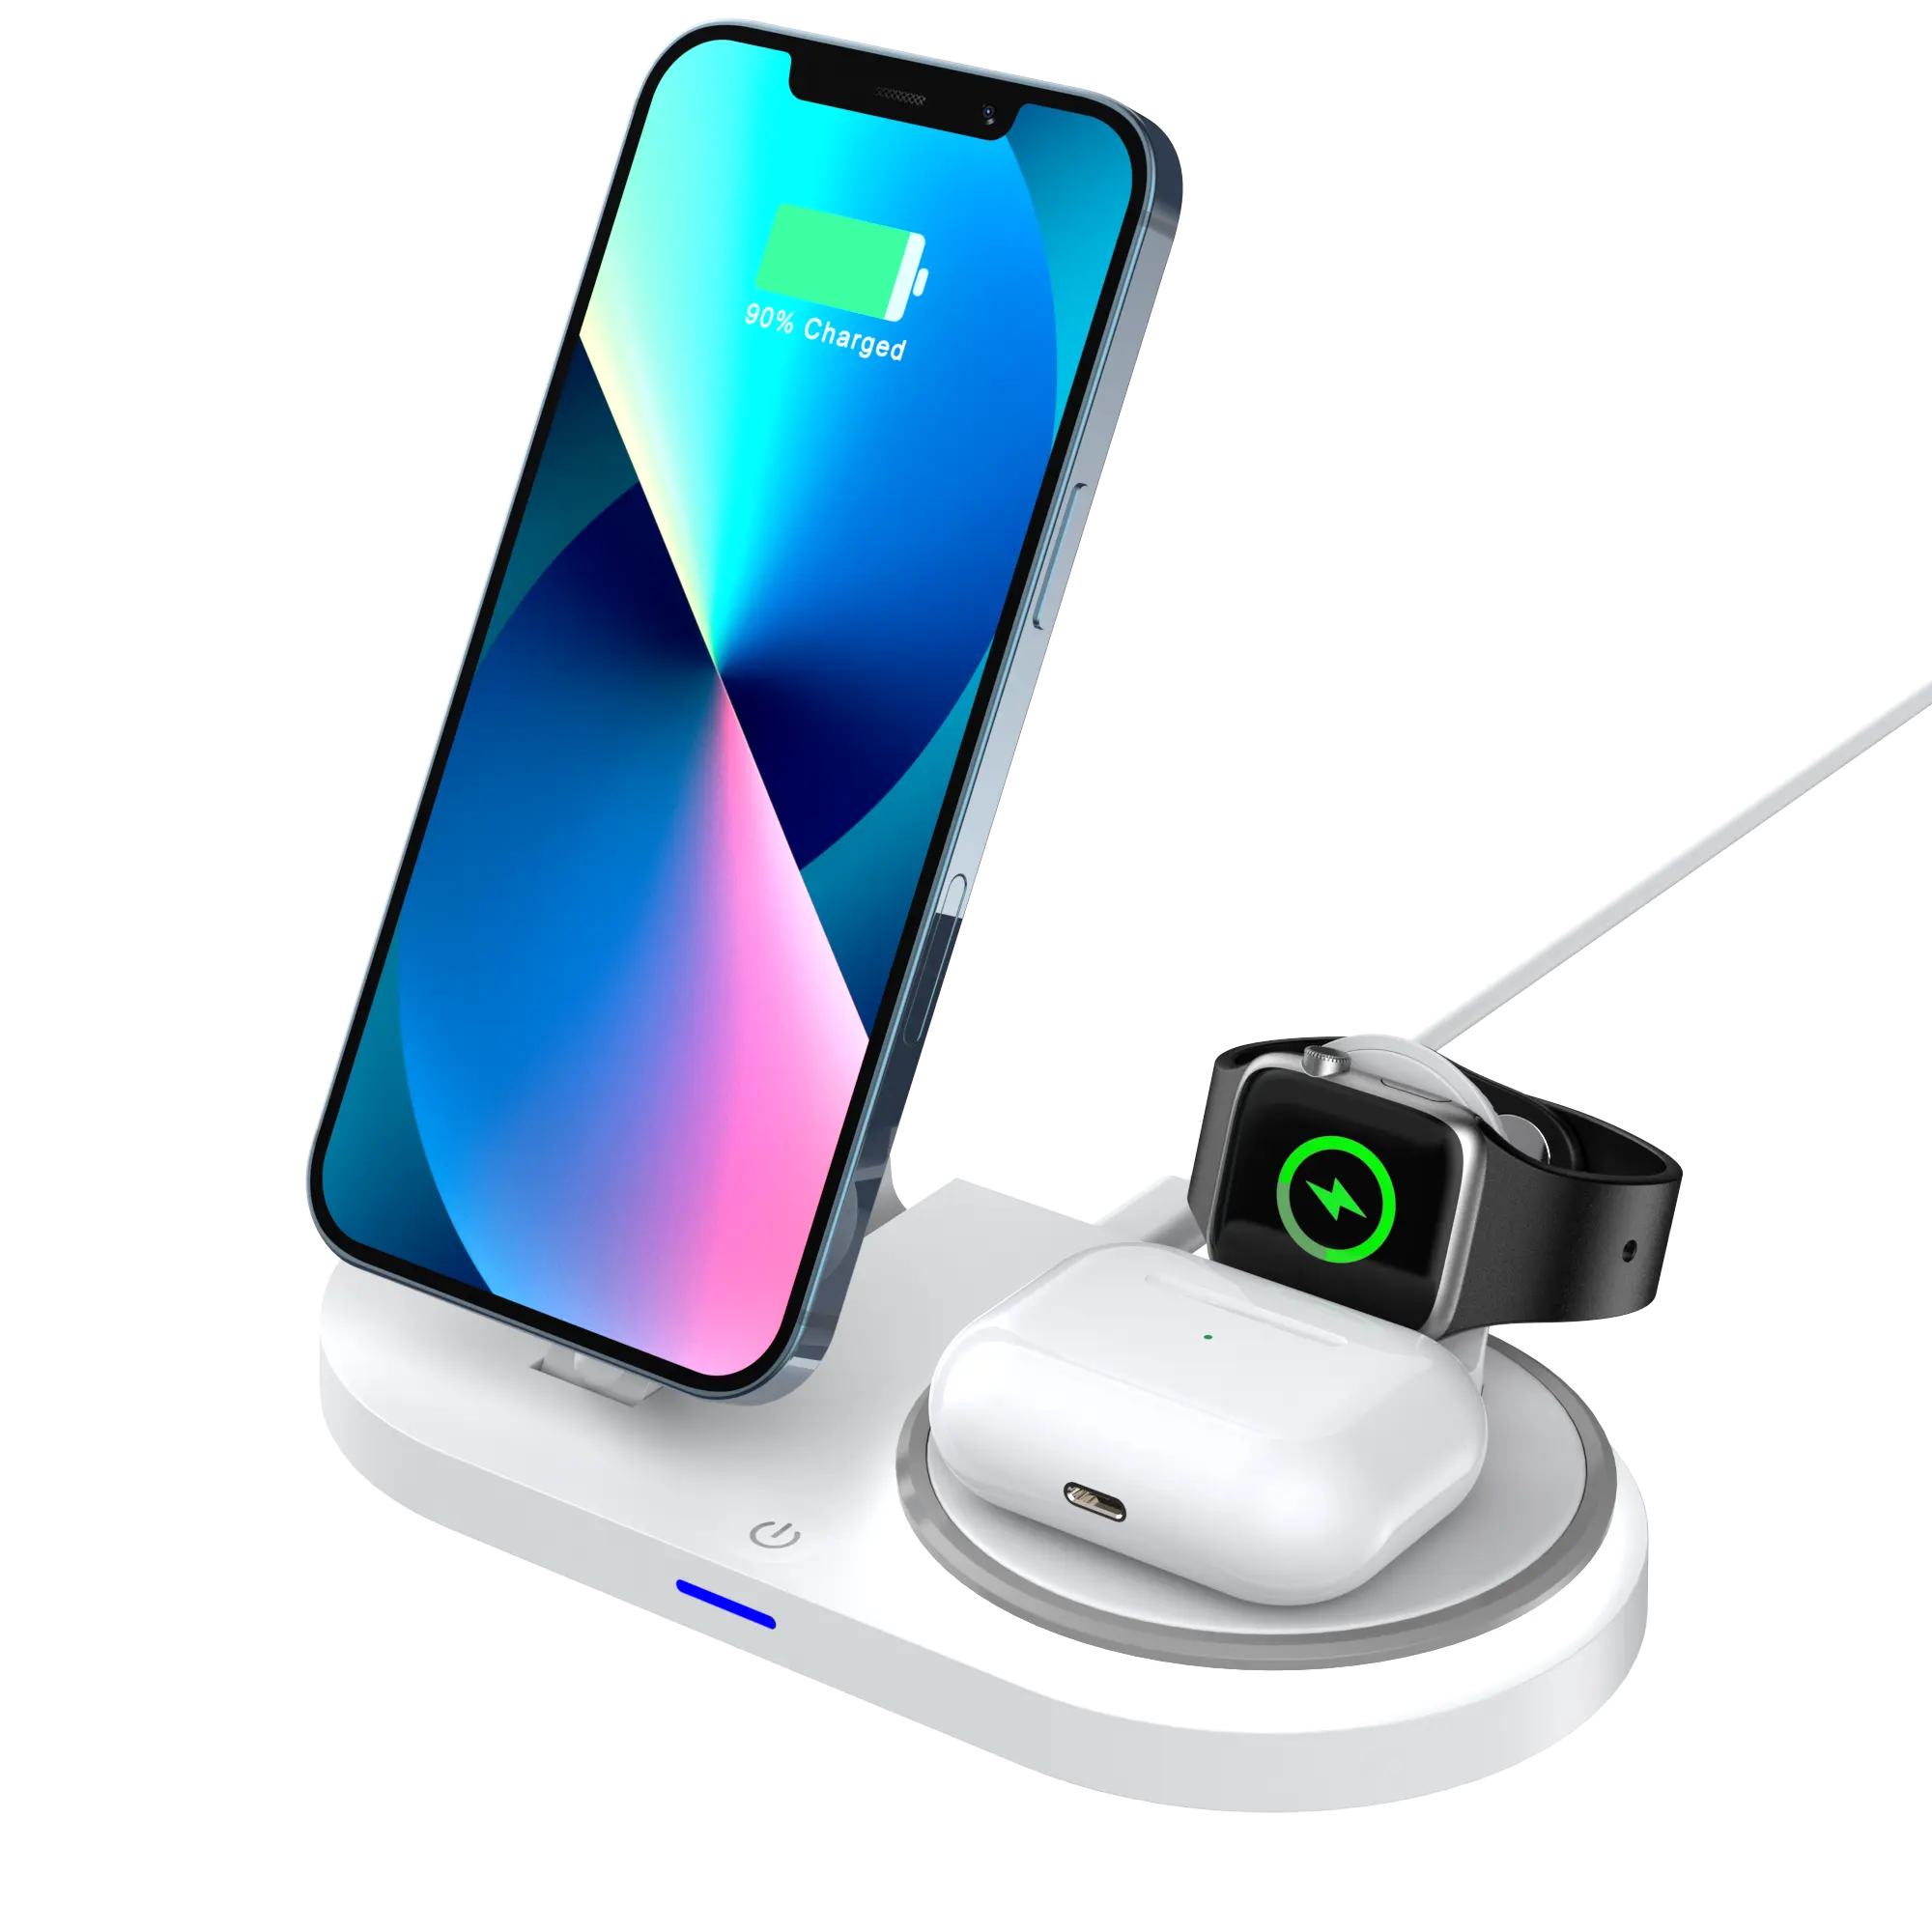 Iphone घड़ी के लिए 5 में 1 वायरलेस चार्जर ट्रेंडिंग प्रोडक्ट्स में 5-सक्षम चार्जिंग स्टैंड